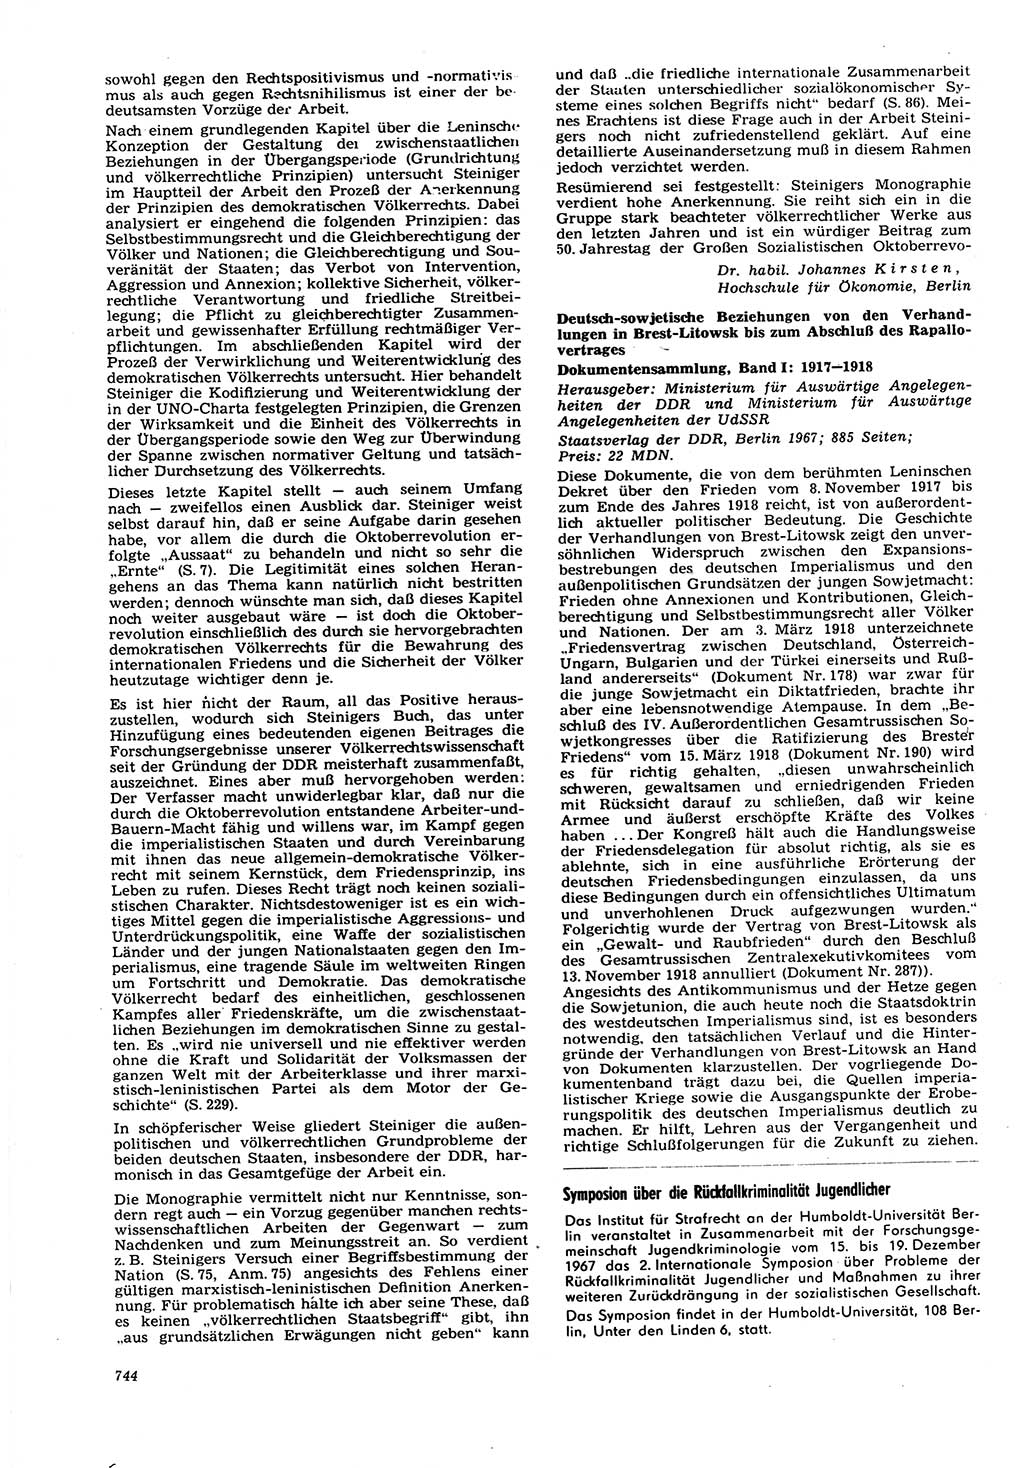 Neue Justiz (NJ), Zeitschrift für Recht und Rechtswissenschaft [Deutsche Demokratische Republik (DDR)], 21. Jahrgang 1967, Seite 744 (NJ DDR 1967, S. 744)